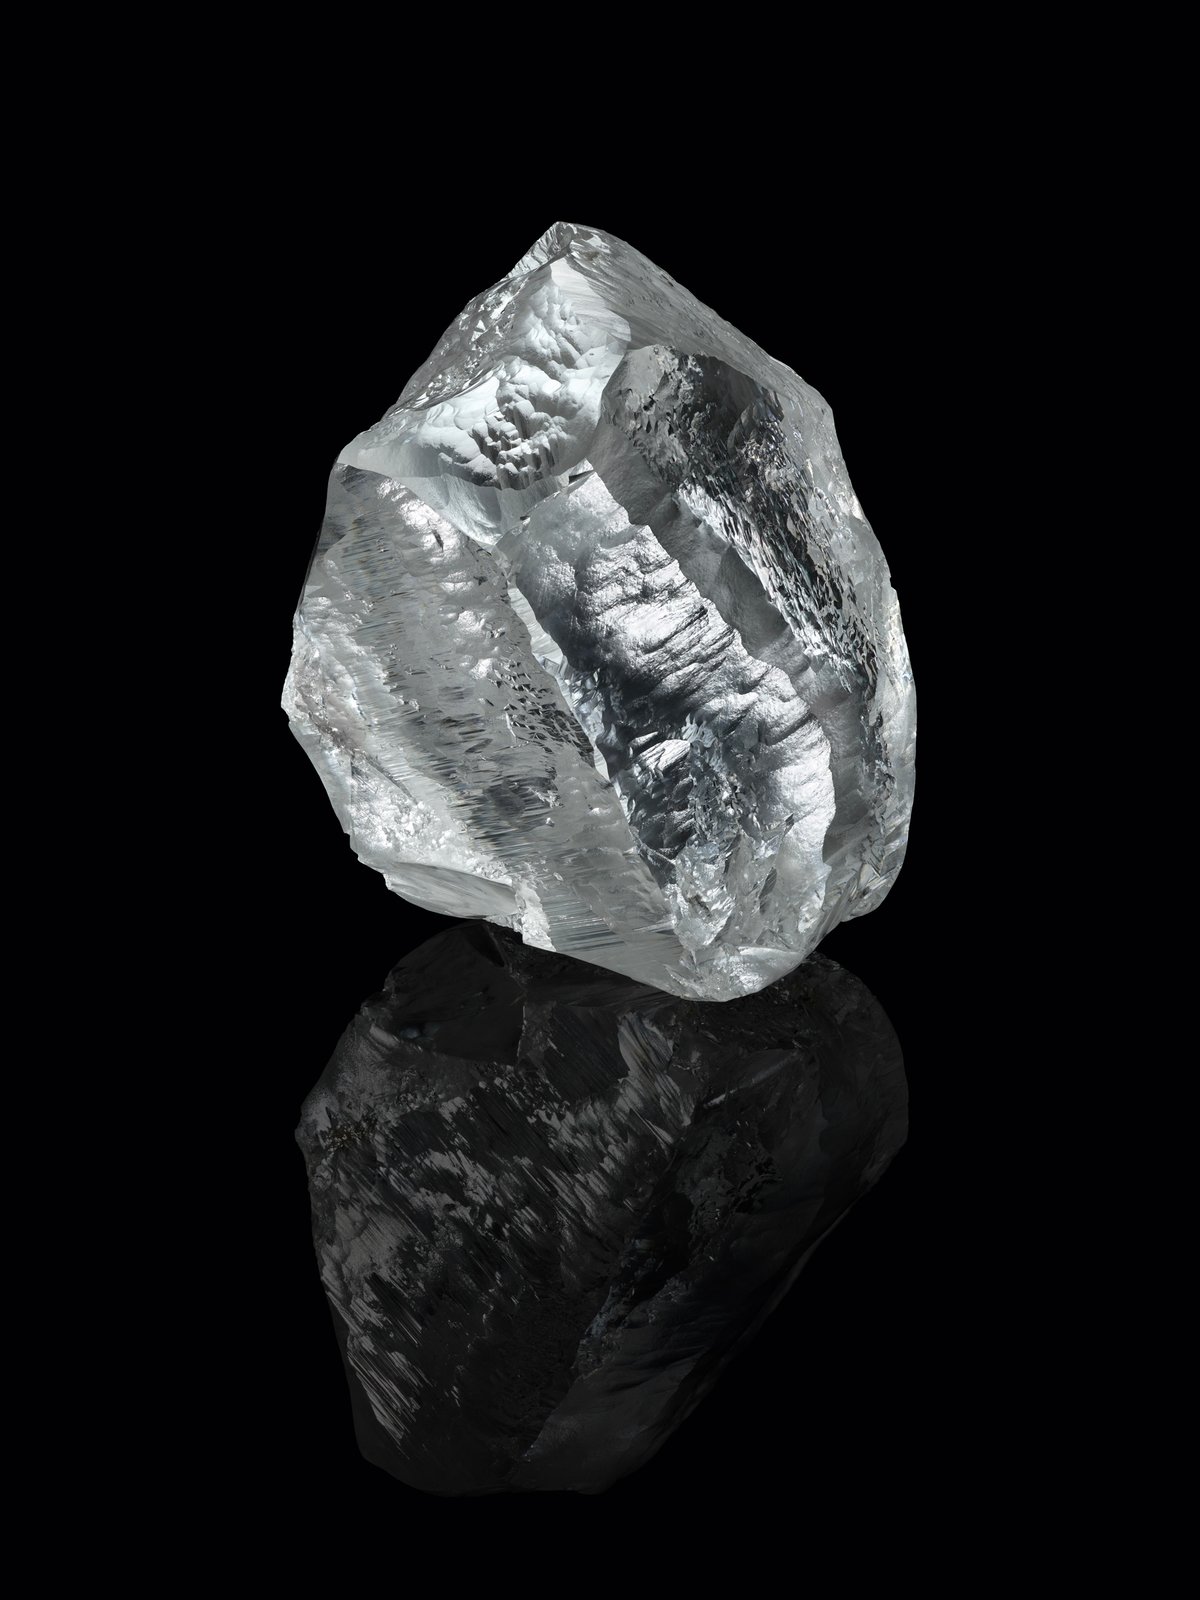 ルイ・ヴィトン 549カラットのダイヤモンド